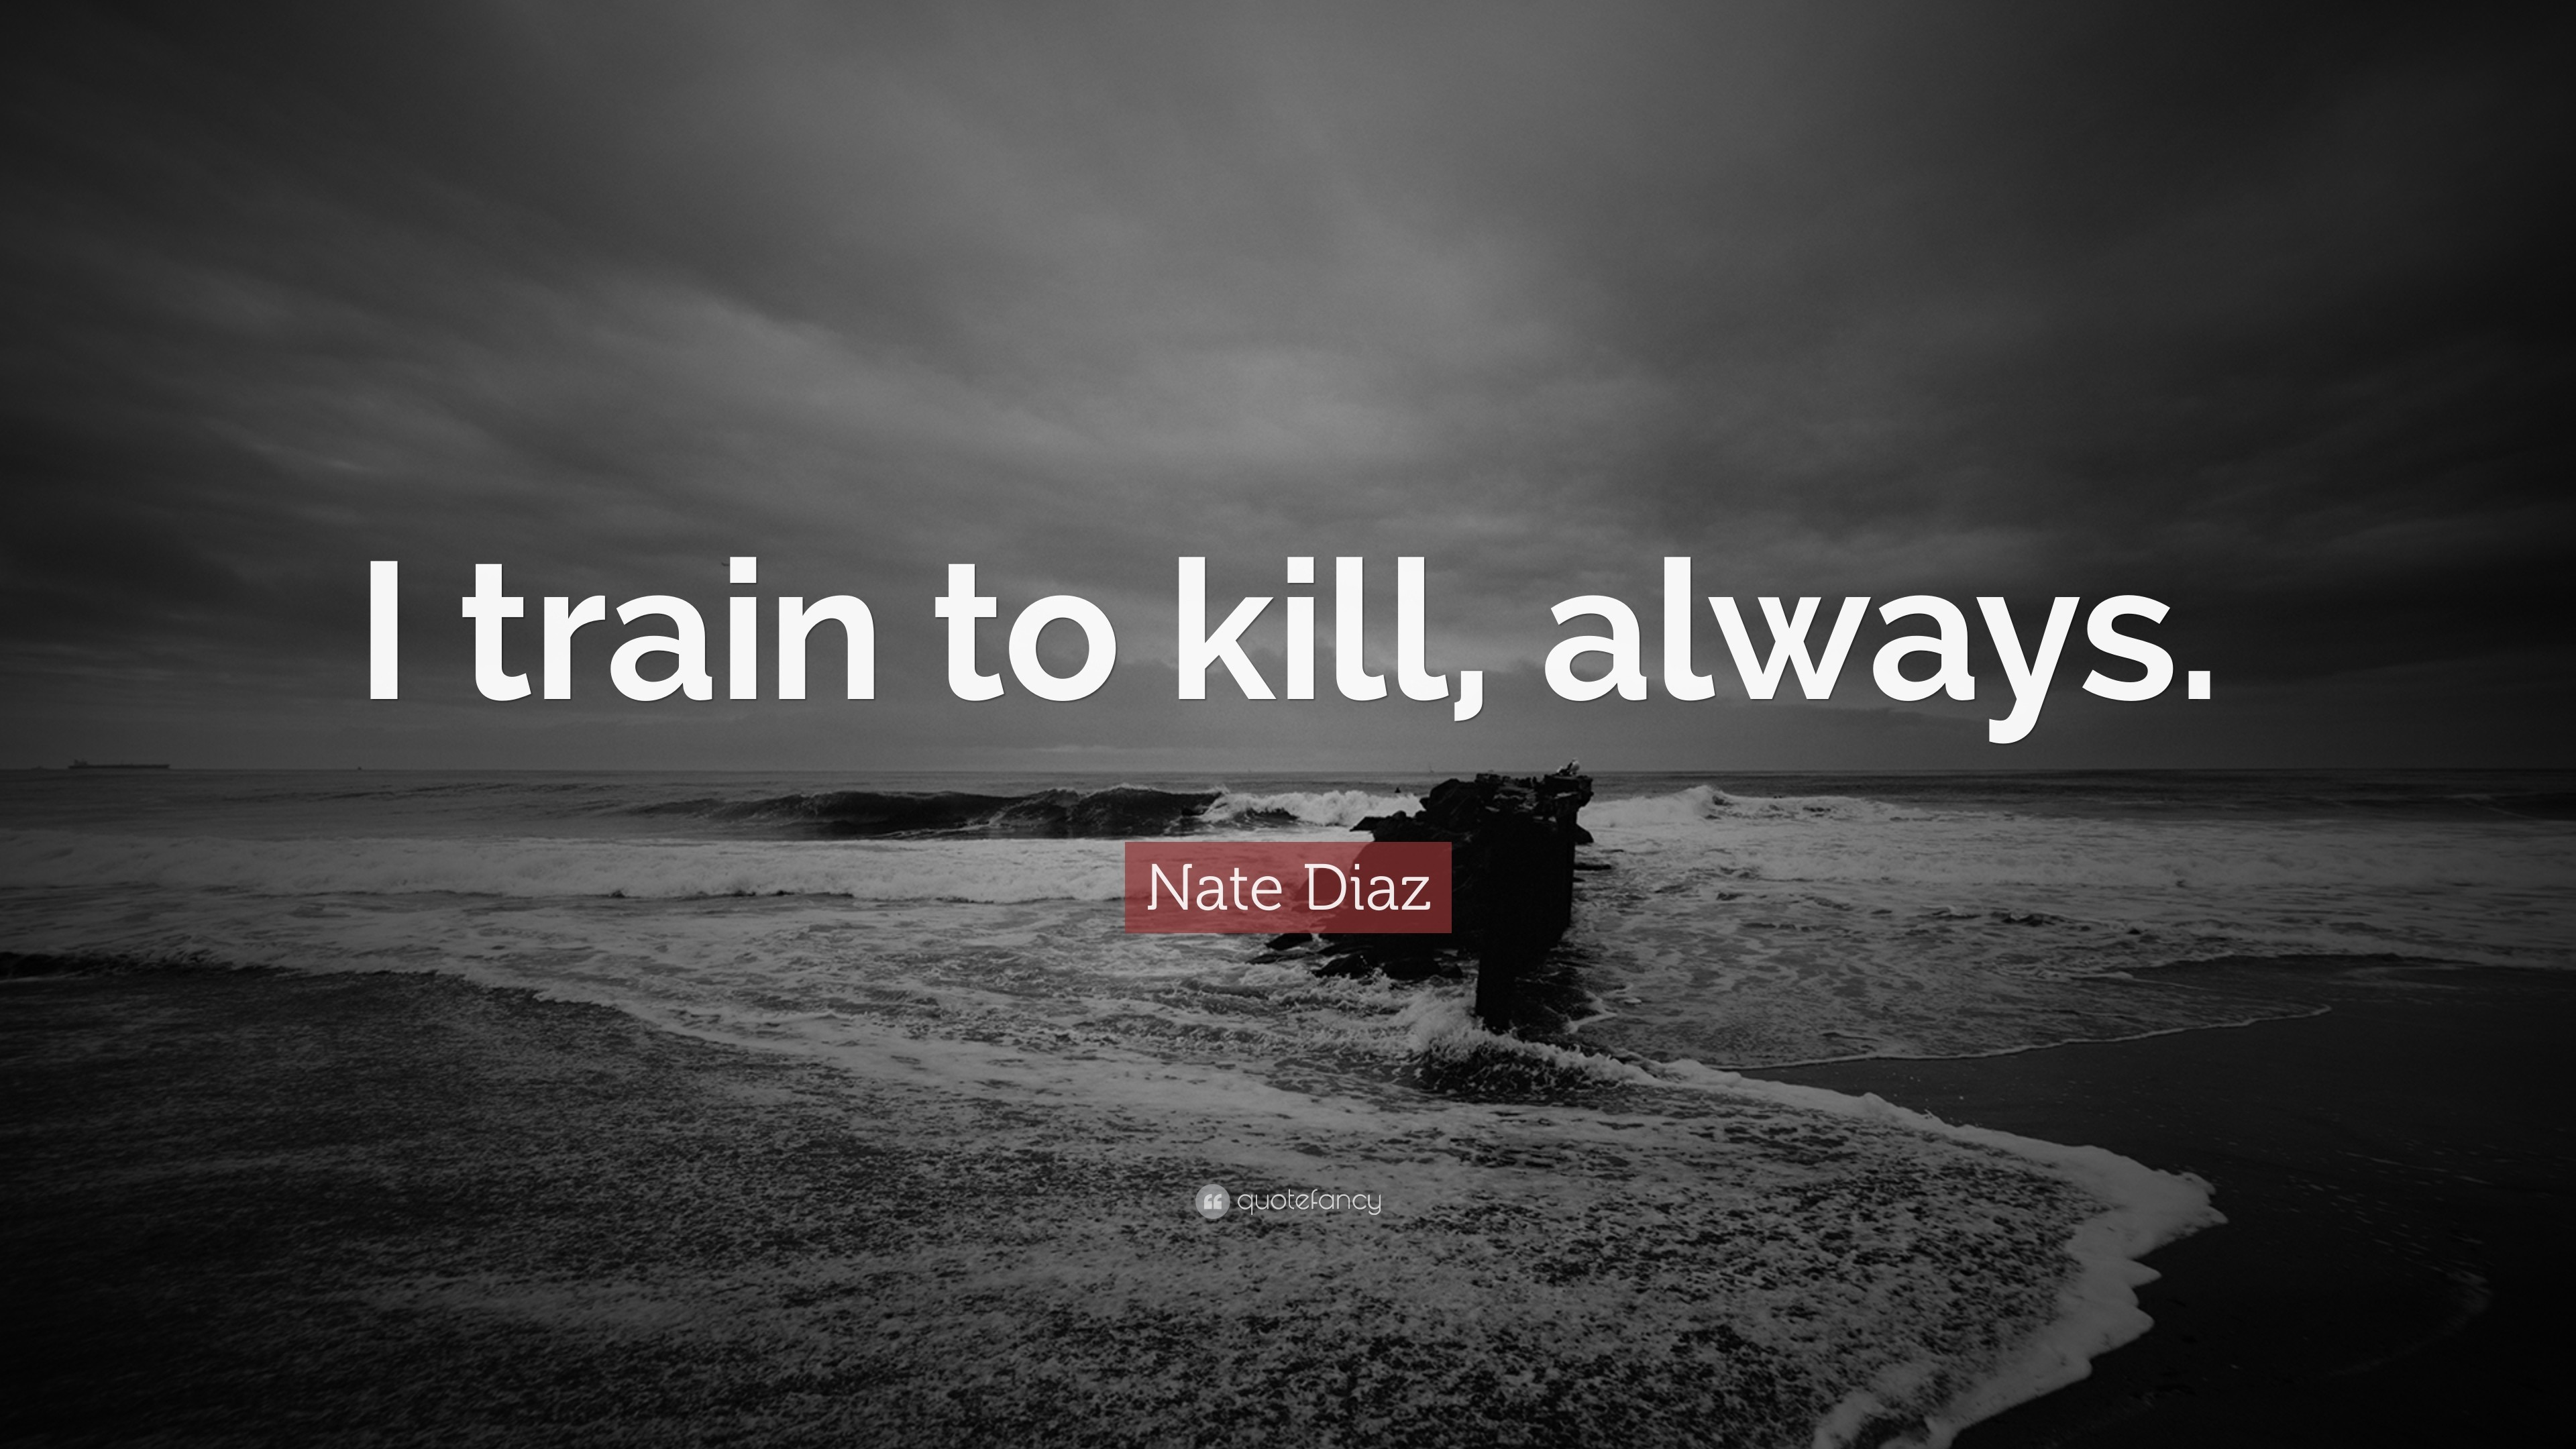 3840x2160 Nate Diaz Quote: “I train to kill, always.”